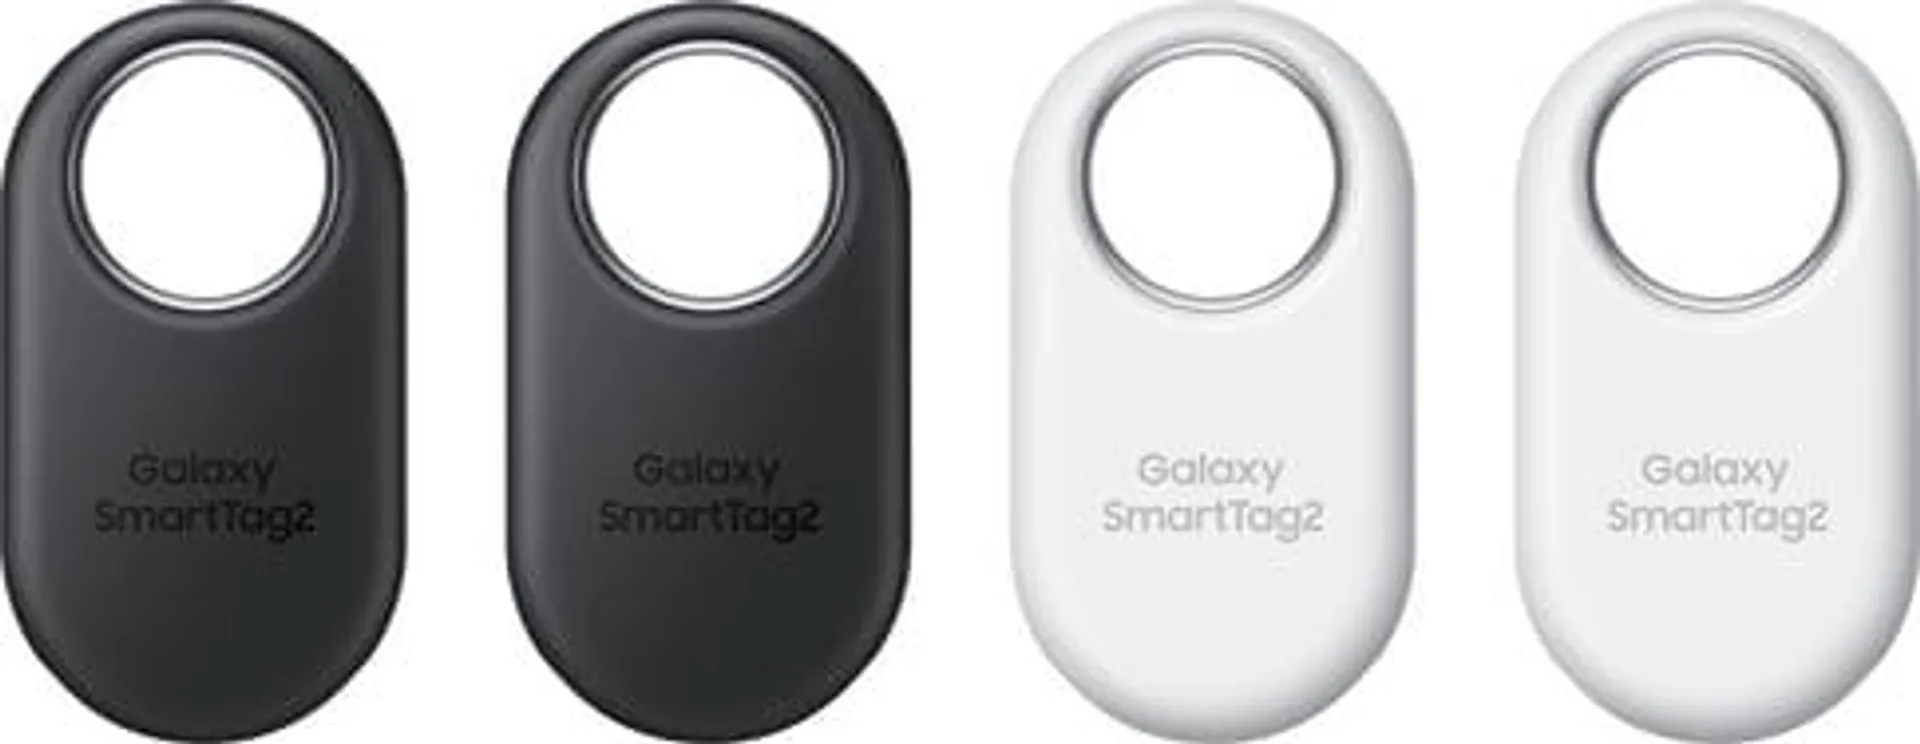 Galaxy Smart Tag2 Schlüssel-Finder (4er-Pack)